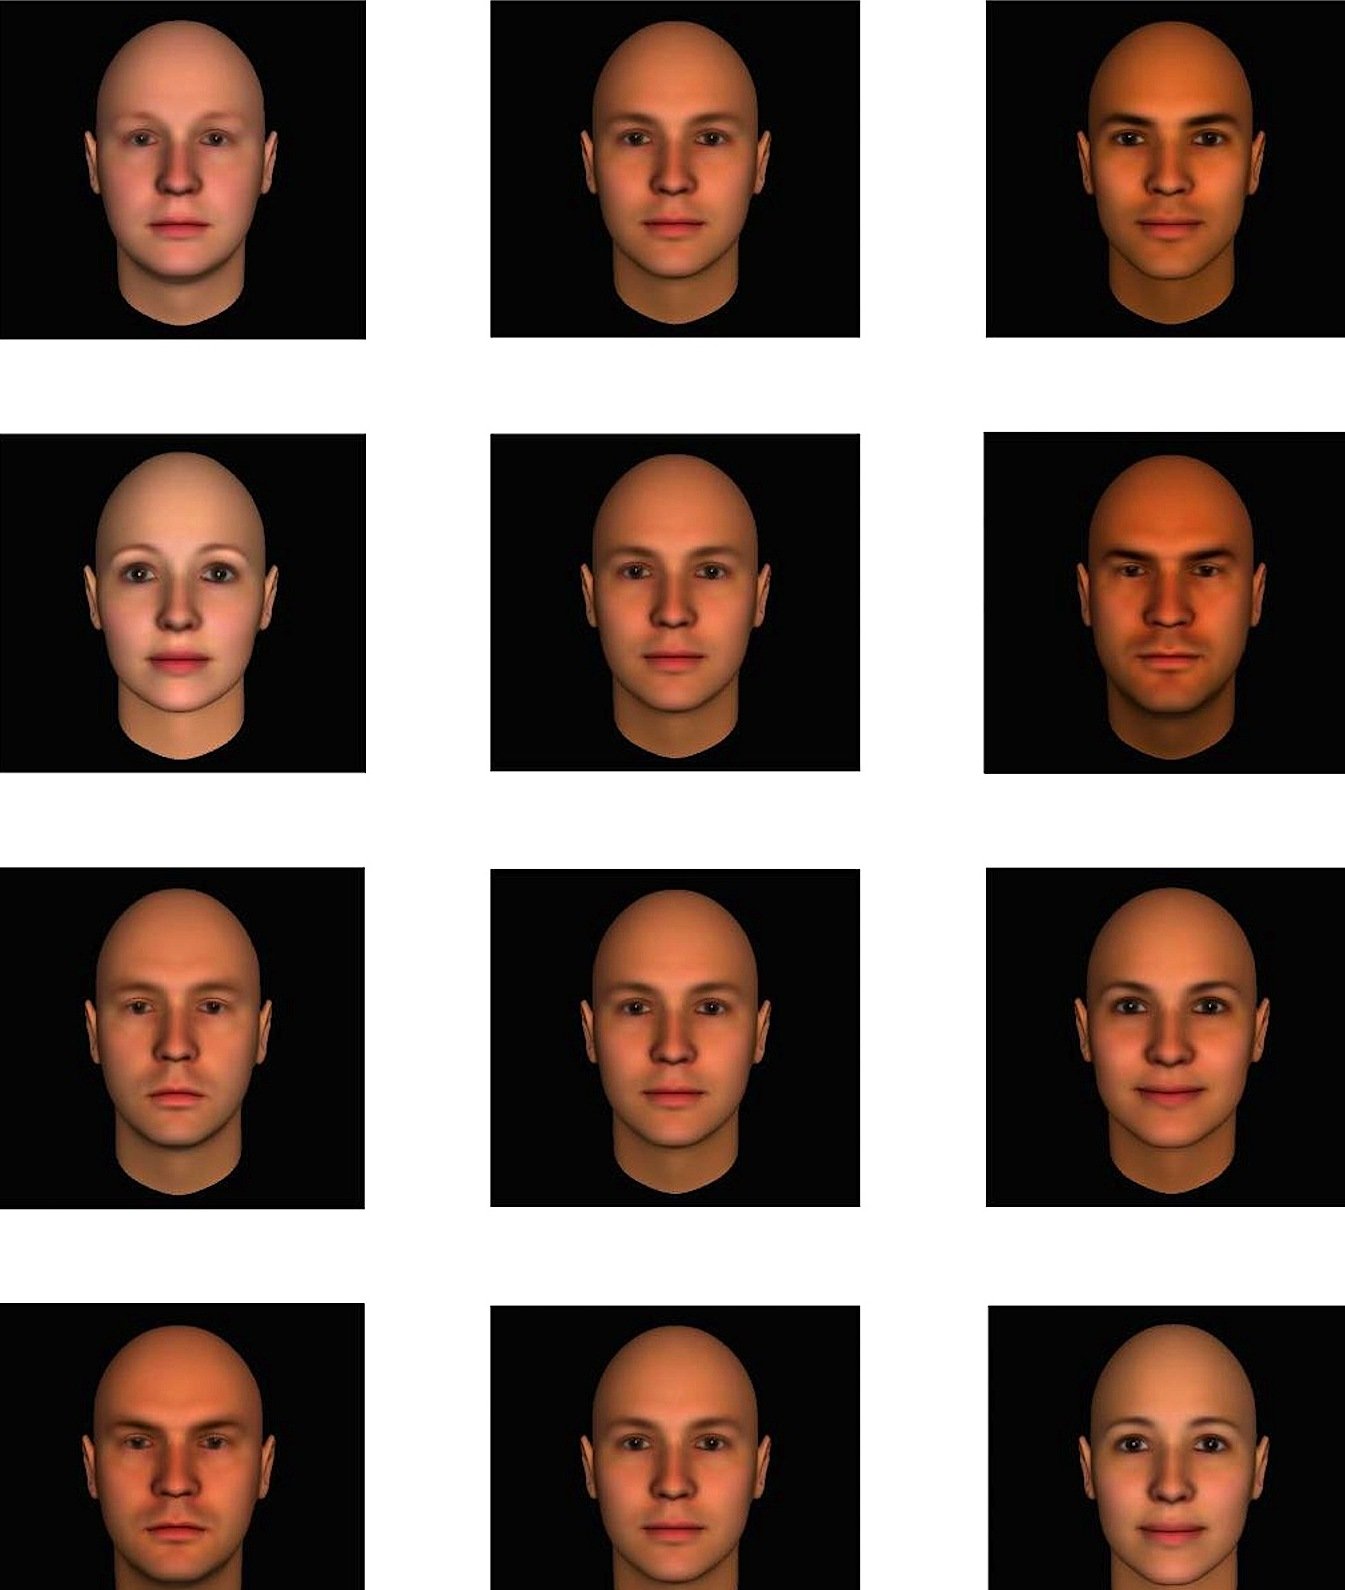 Die gleichen Gesichter mit unterschiedlicher Aussage: Wie kompetent (oben), dominant (2. Reihe), extrovertiert (3. Reihe) oder vertrauenswürdig wirken diese Menschen? In der Mitte jeder Reihe ist ein Durchschnittsgesicht mit der jeweiligen Haupteigenschaft abgebildet, links ein schwächer ausgeprägtes Gesicht, rechts ein Gesicht mit starker Ausprägung.